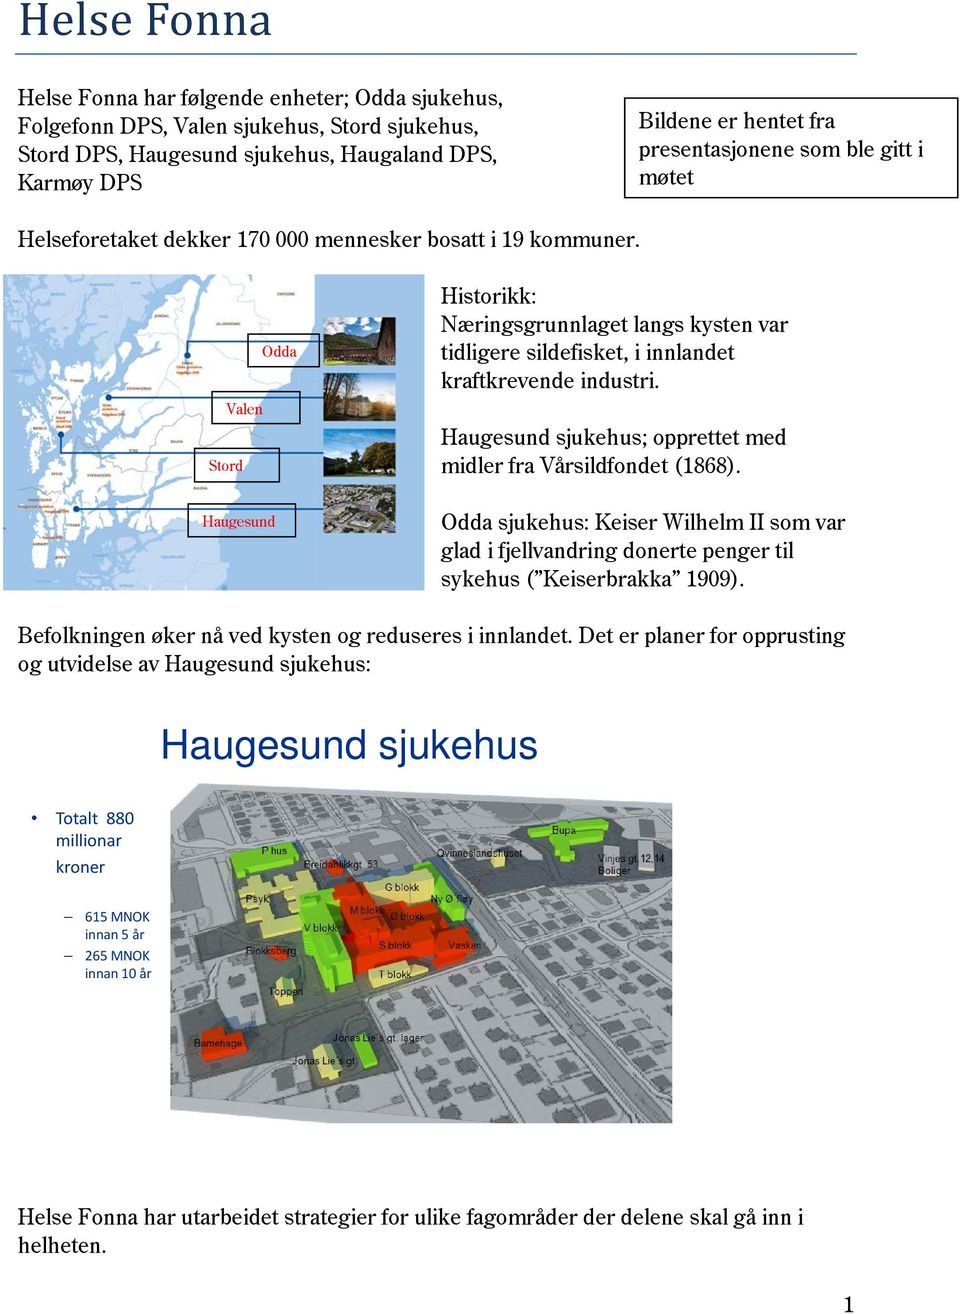 Odda Valen Stord Haugesund Historikk: Næringsgrunnlaget langs kysten var tidligere sildefisket, i innlandet kraftkrevende industri. Haugesund sjukehus; opprettet med midler fra Vårsildfondet (1868).